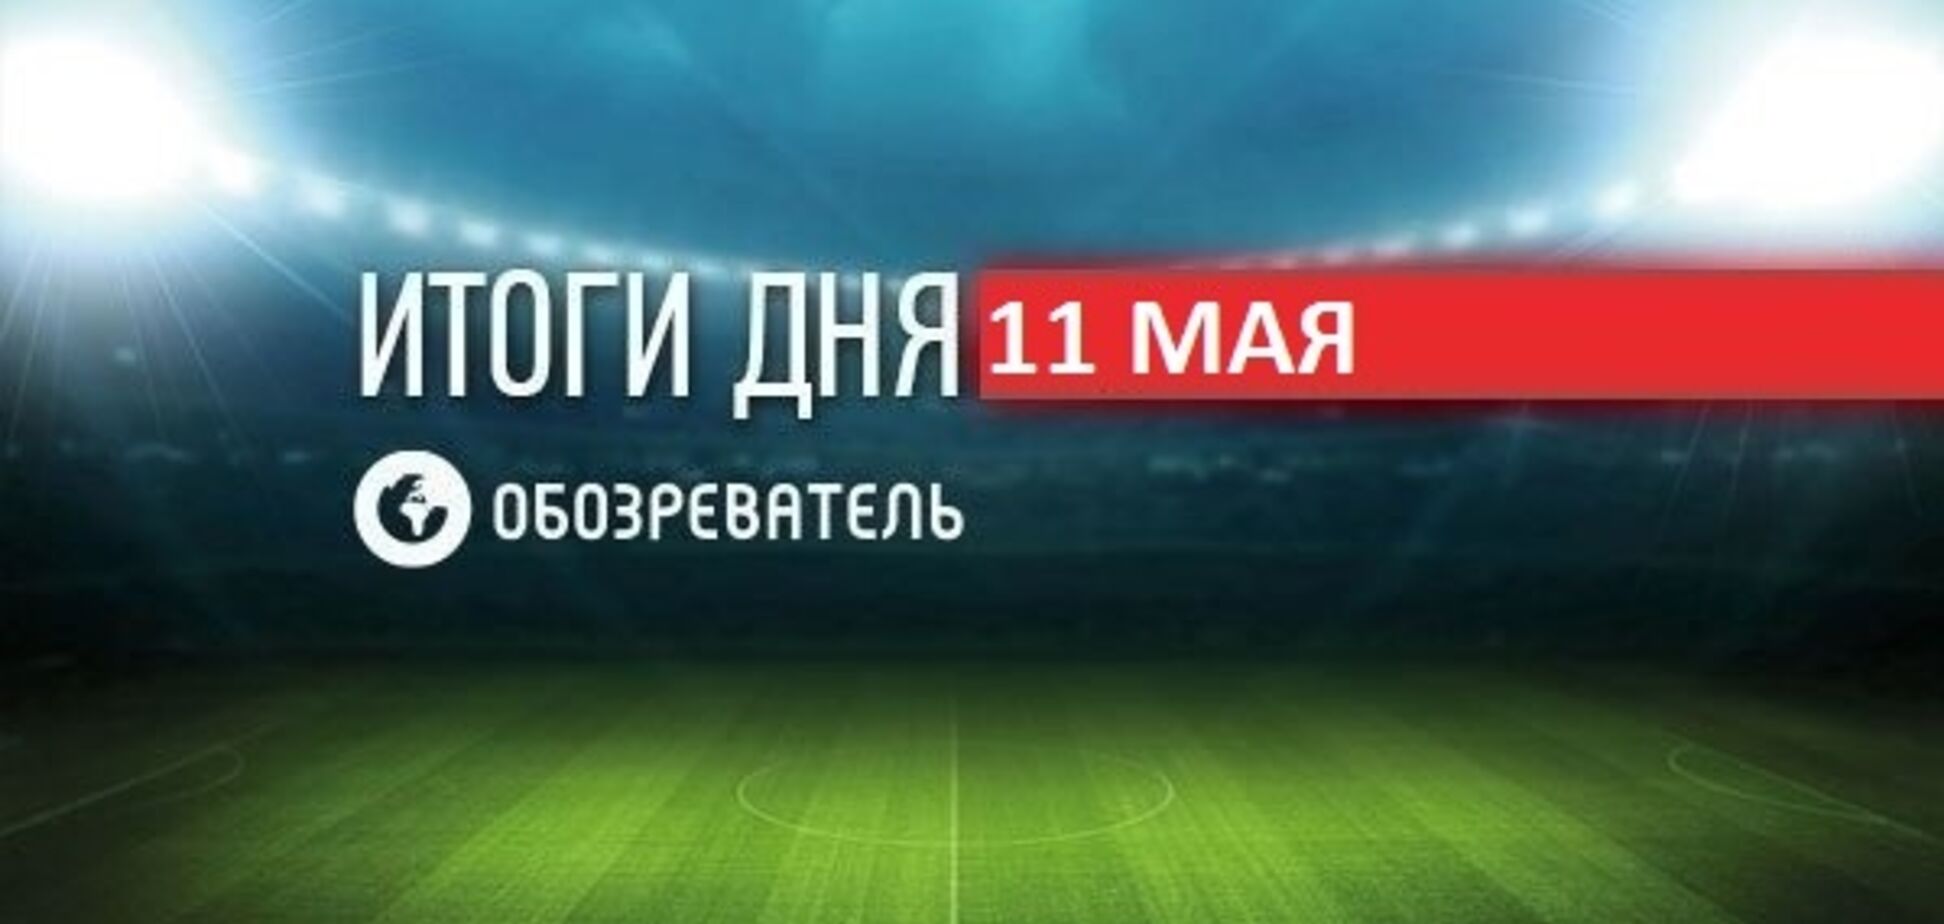 Из-за Ломаченко возник громкий скандал: спортивные итоги 11 мая